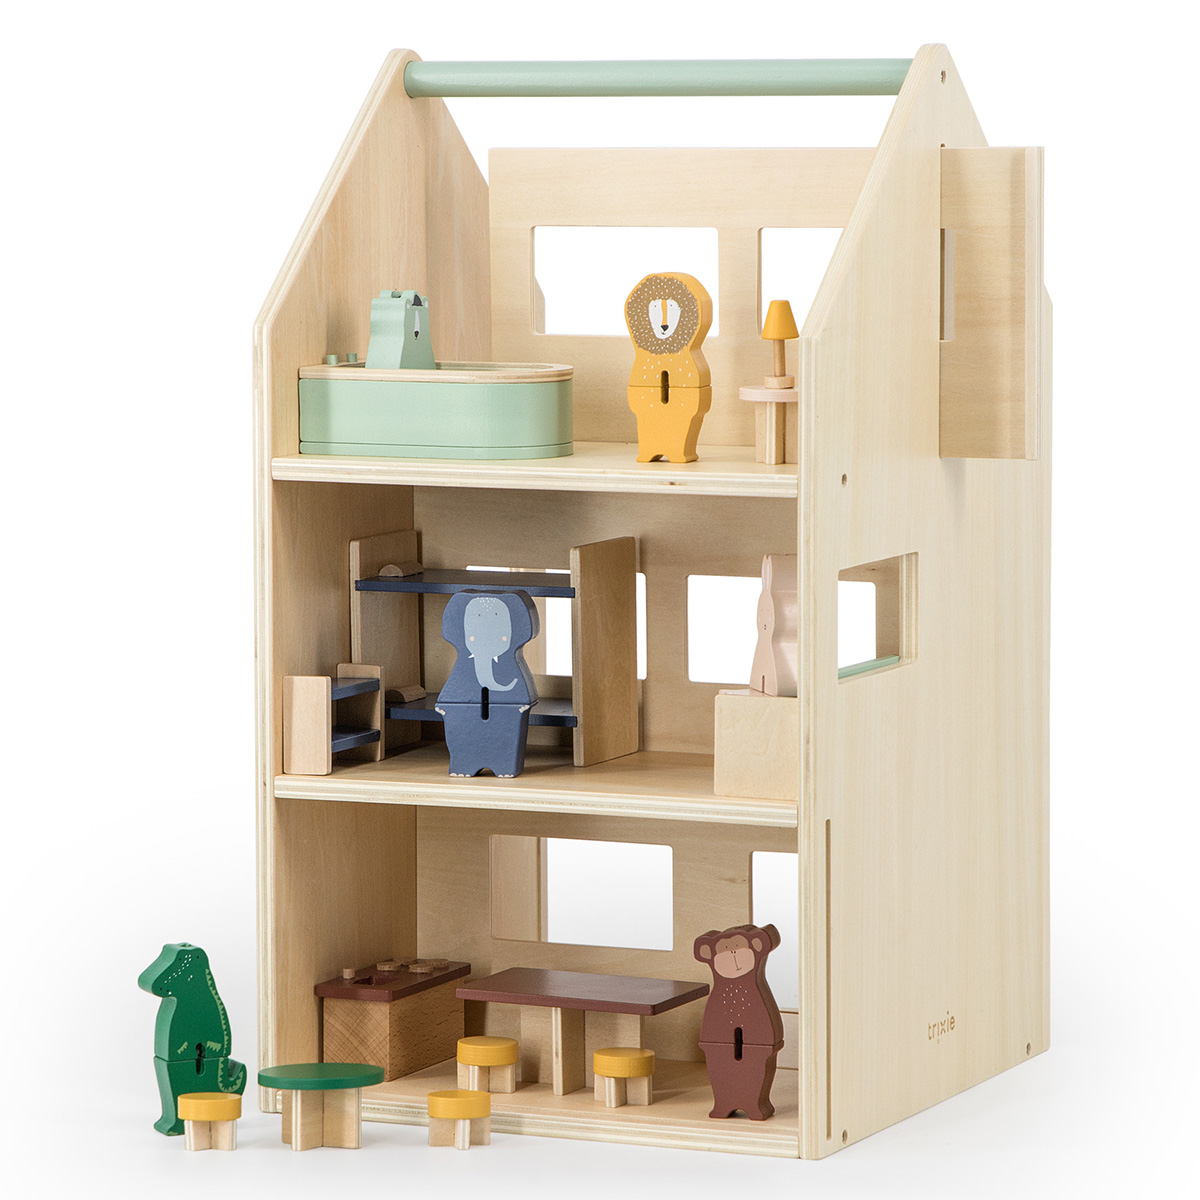 Accessoire maison de poupées : La cuisine - Jeux et jouets Djeco - Avenue  des Jeux